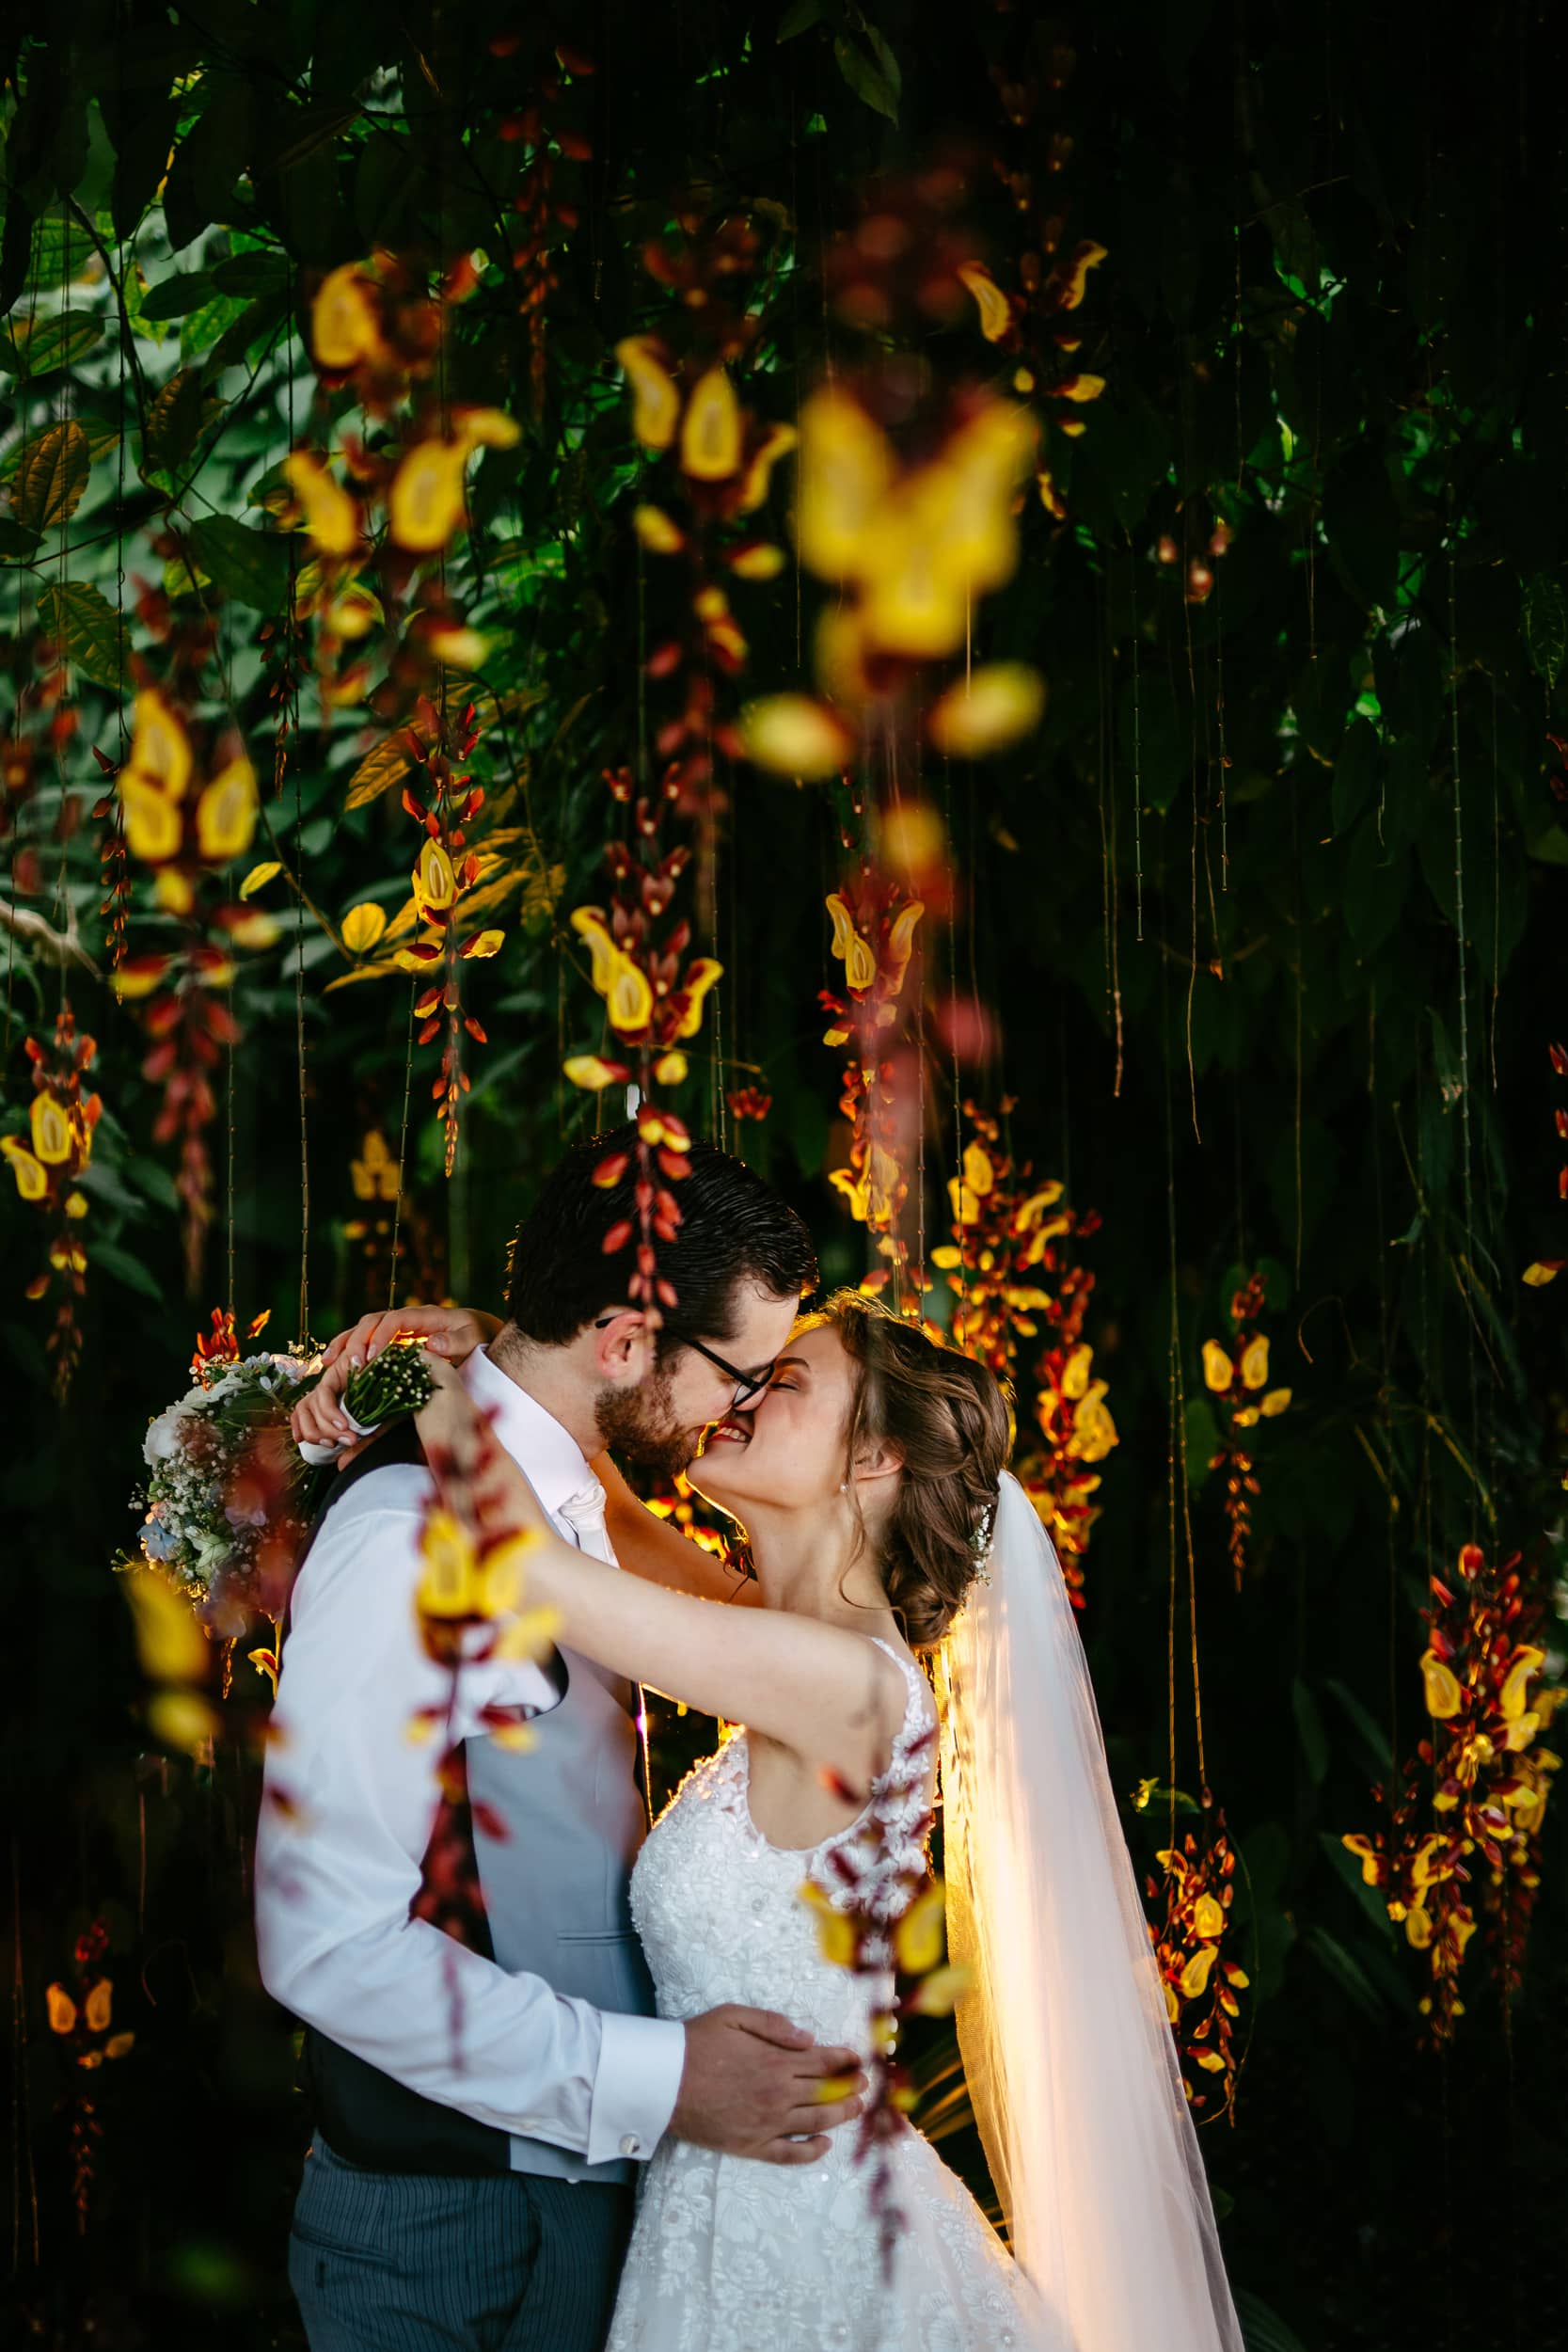 Op hun trouwdag kust een bruid en bruid elkaar onder een prachtige bloemenboog.